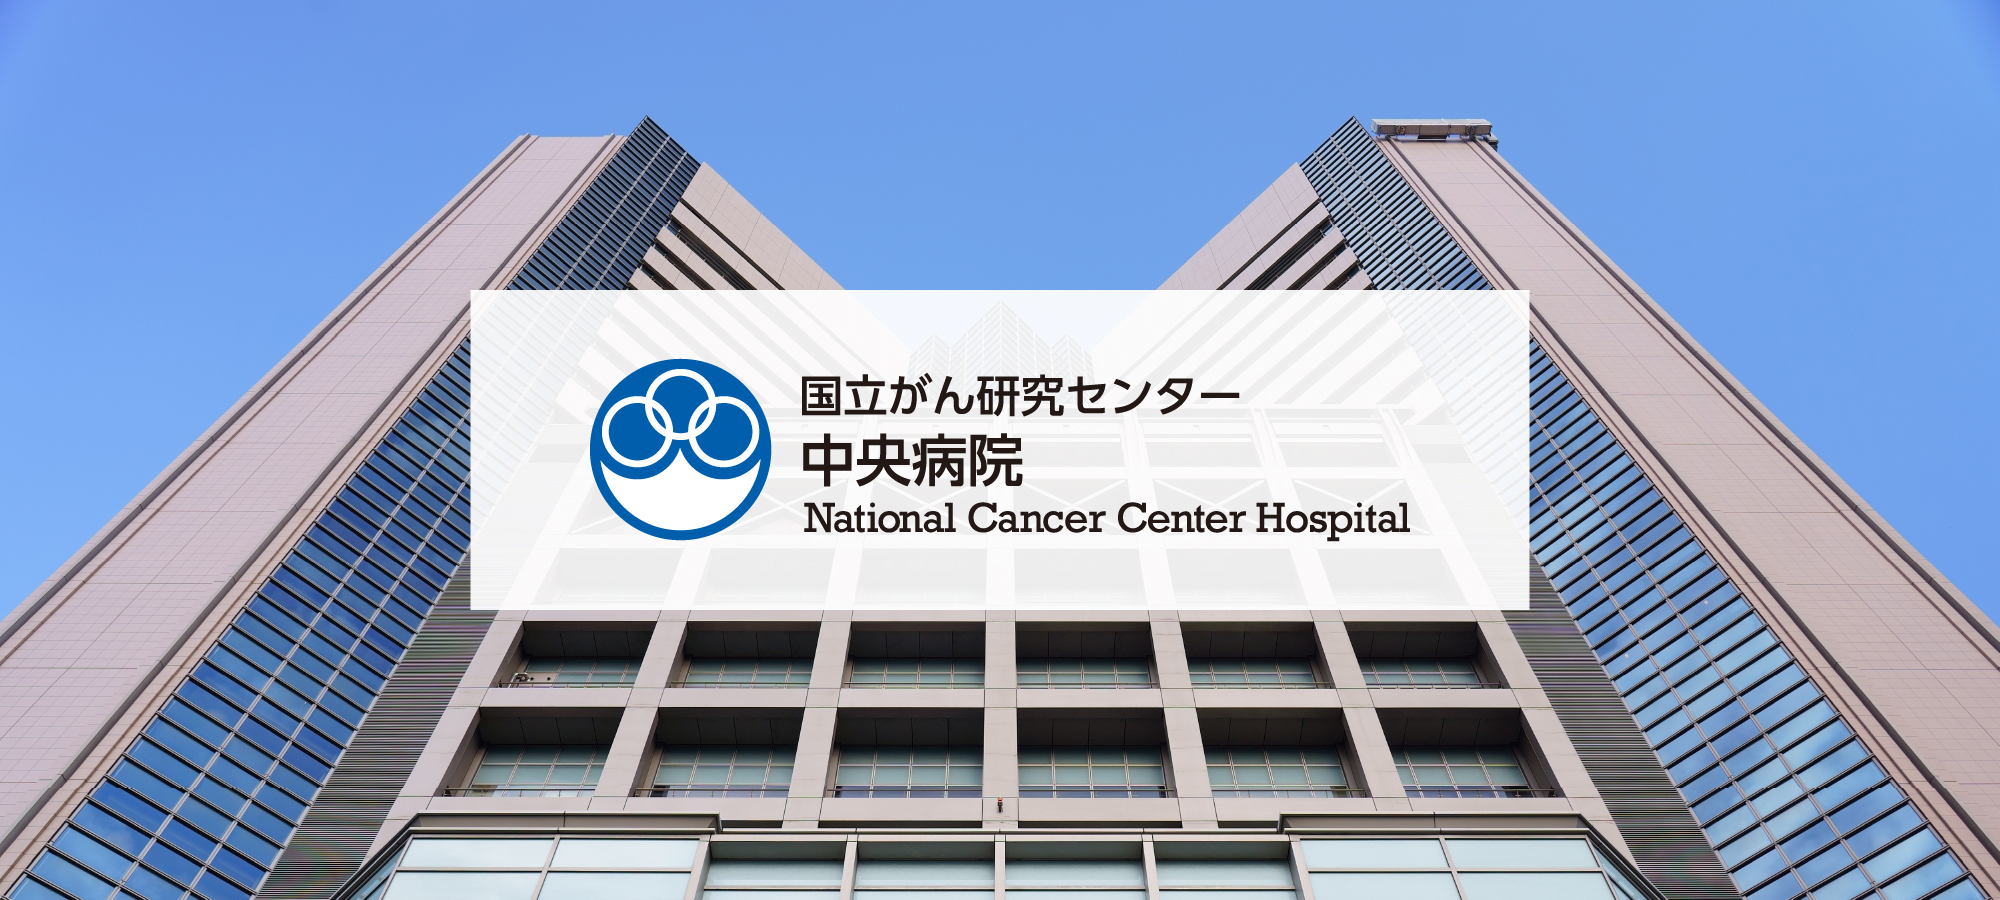 Rumah Sakit Pusat Kanker Nasional